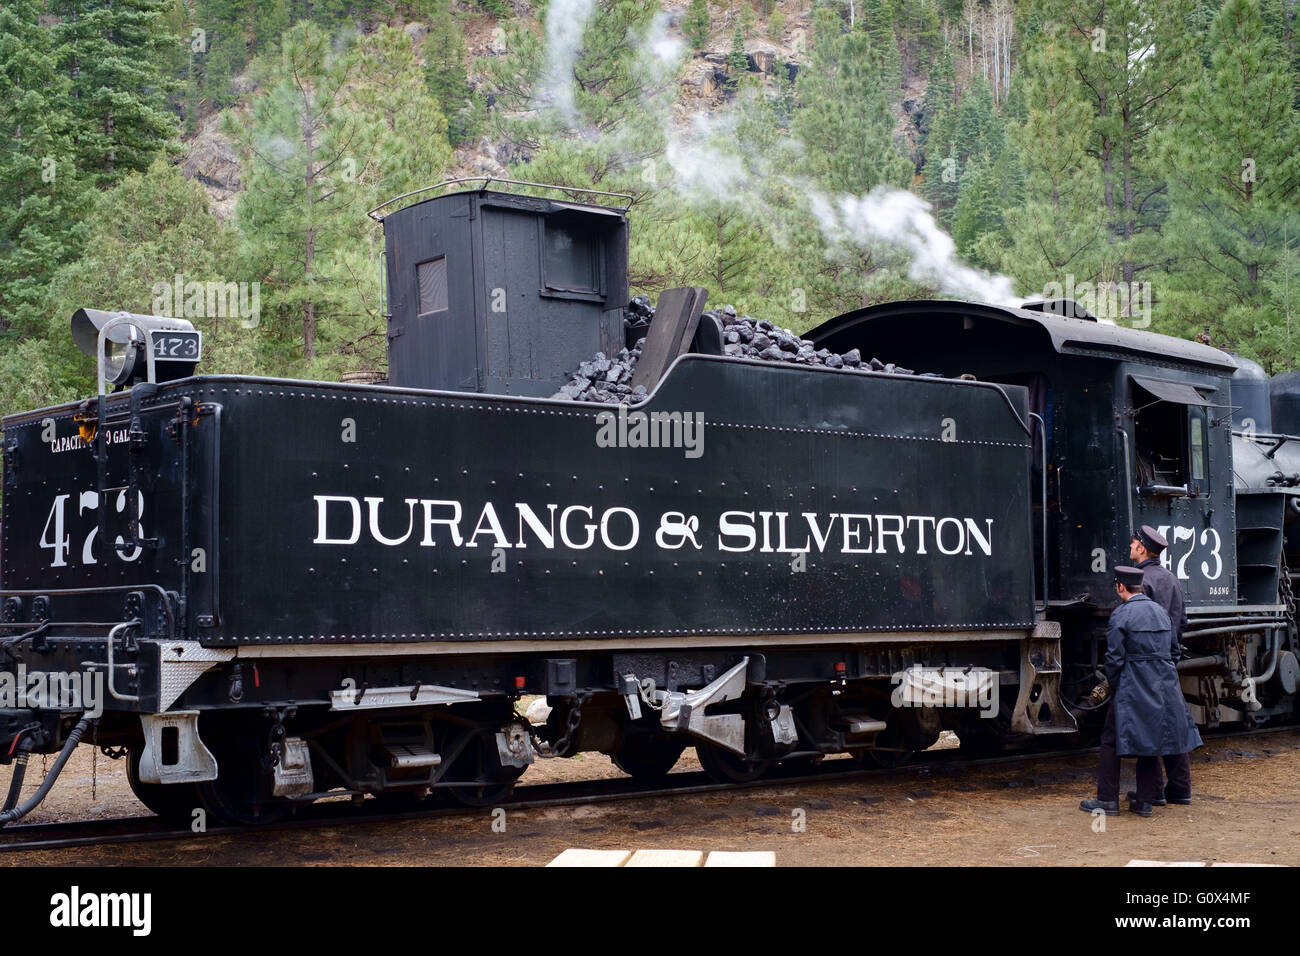 Le train à vapeur Durango Silverton Narrow Gauge Heritage Railway, Colorado, USA dans un contexte d'arbres de pin et de montagne Banque D'Images